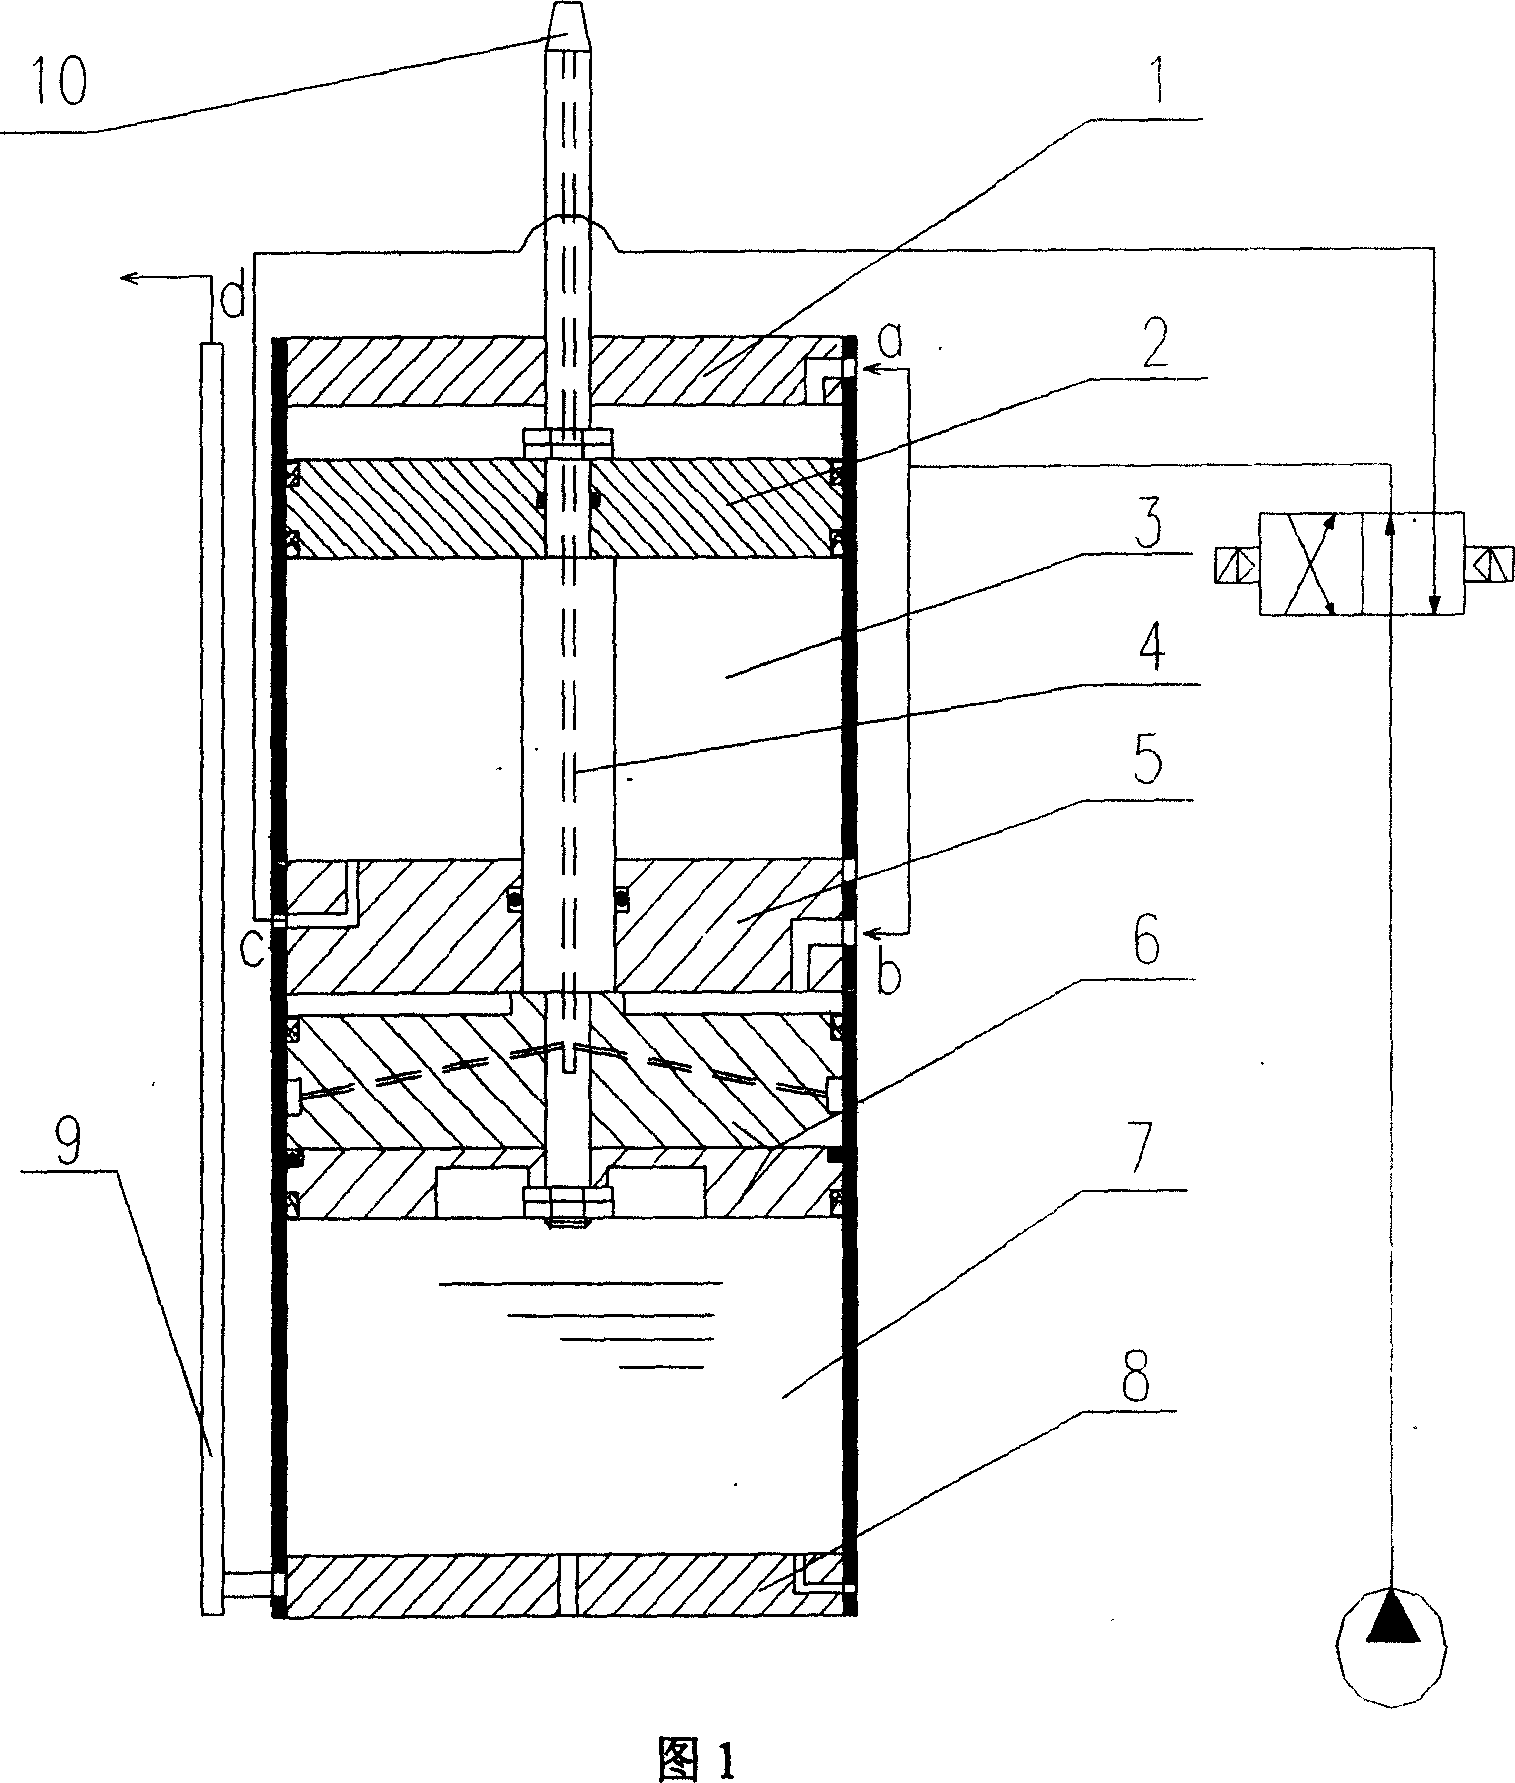 Apparatus for pressurizing gas, liquid